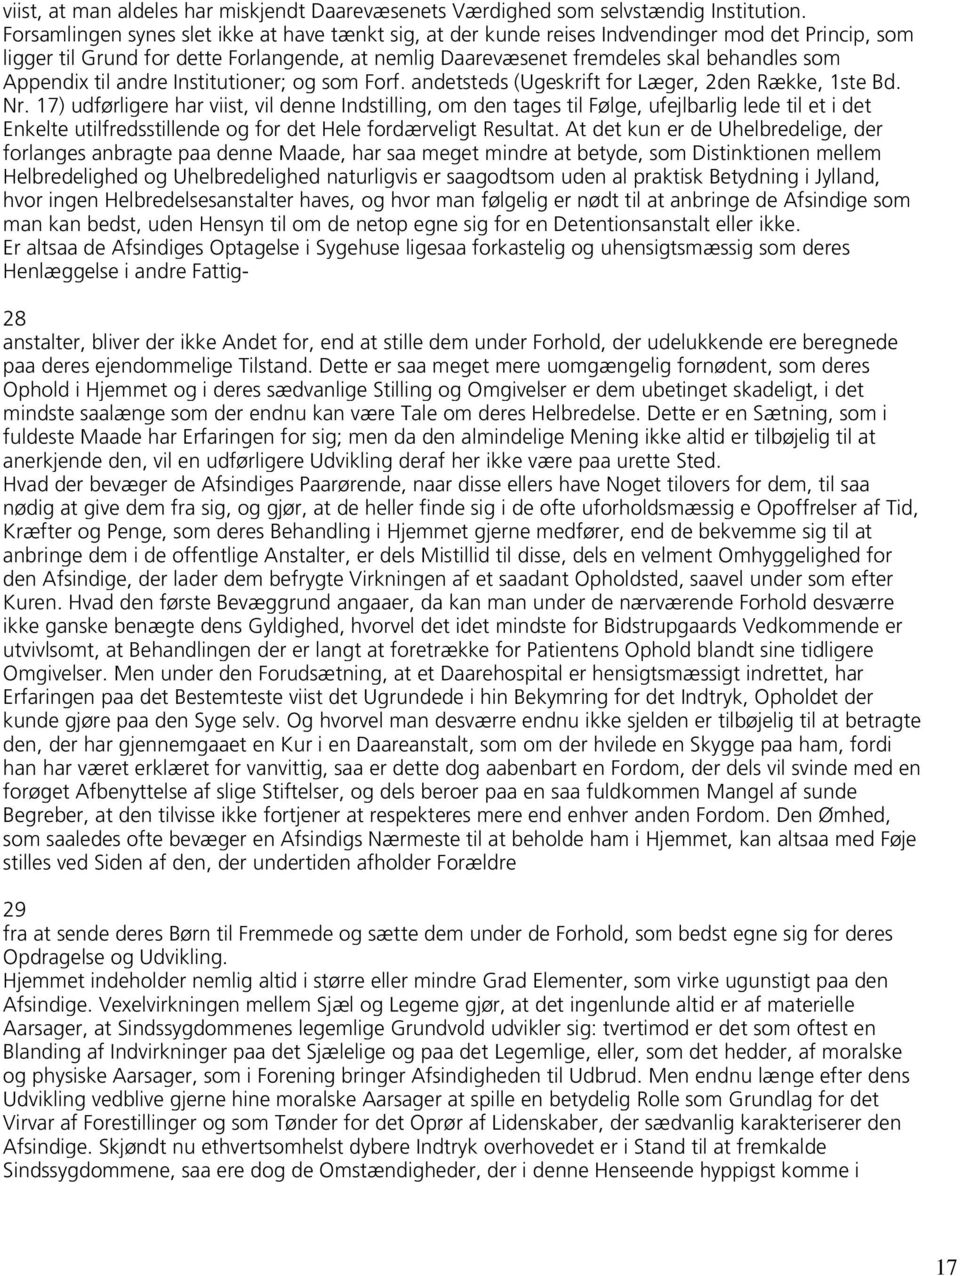 Appendix til andre Institutioner; og som Forf. andetsteds (Ugeskrift for Læger, 2den Række, 1ste Bd. Nr.